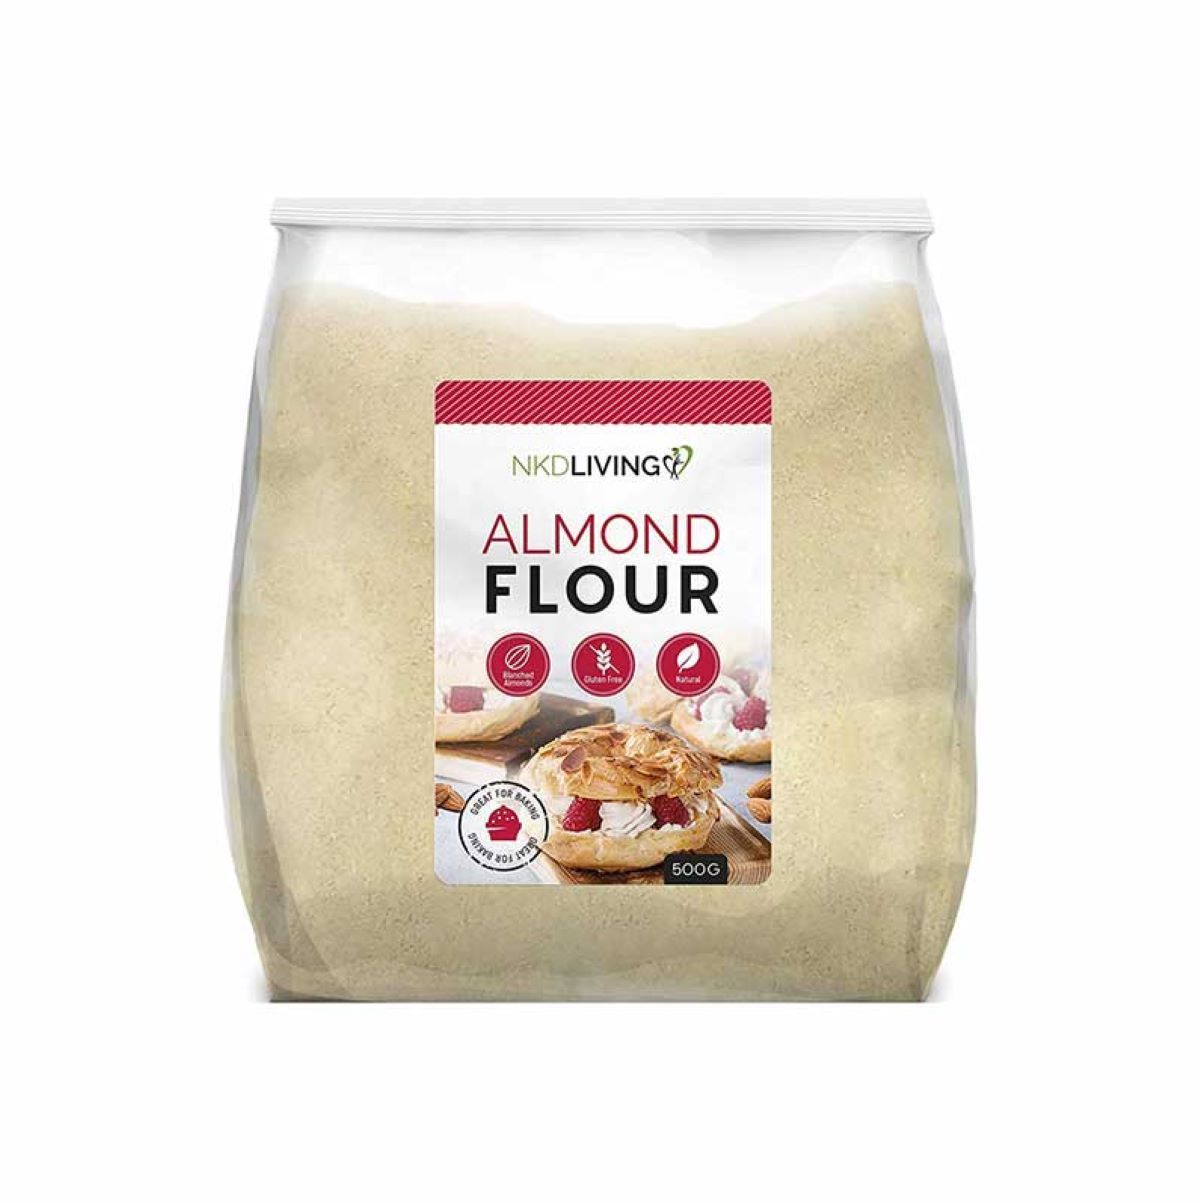 NKD Living Almond Flour (500g)